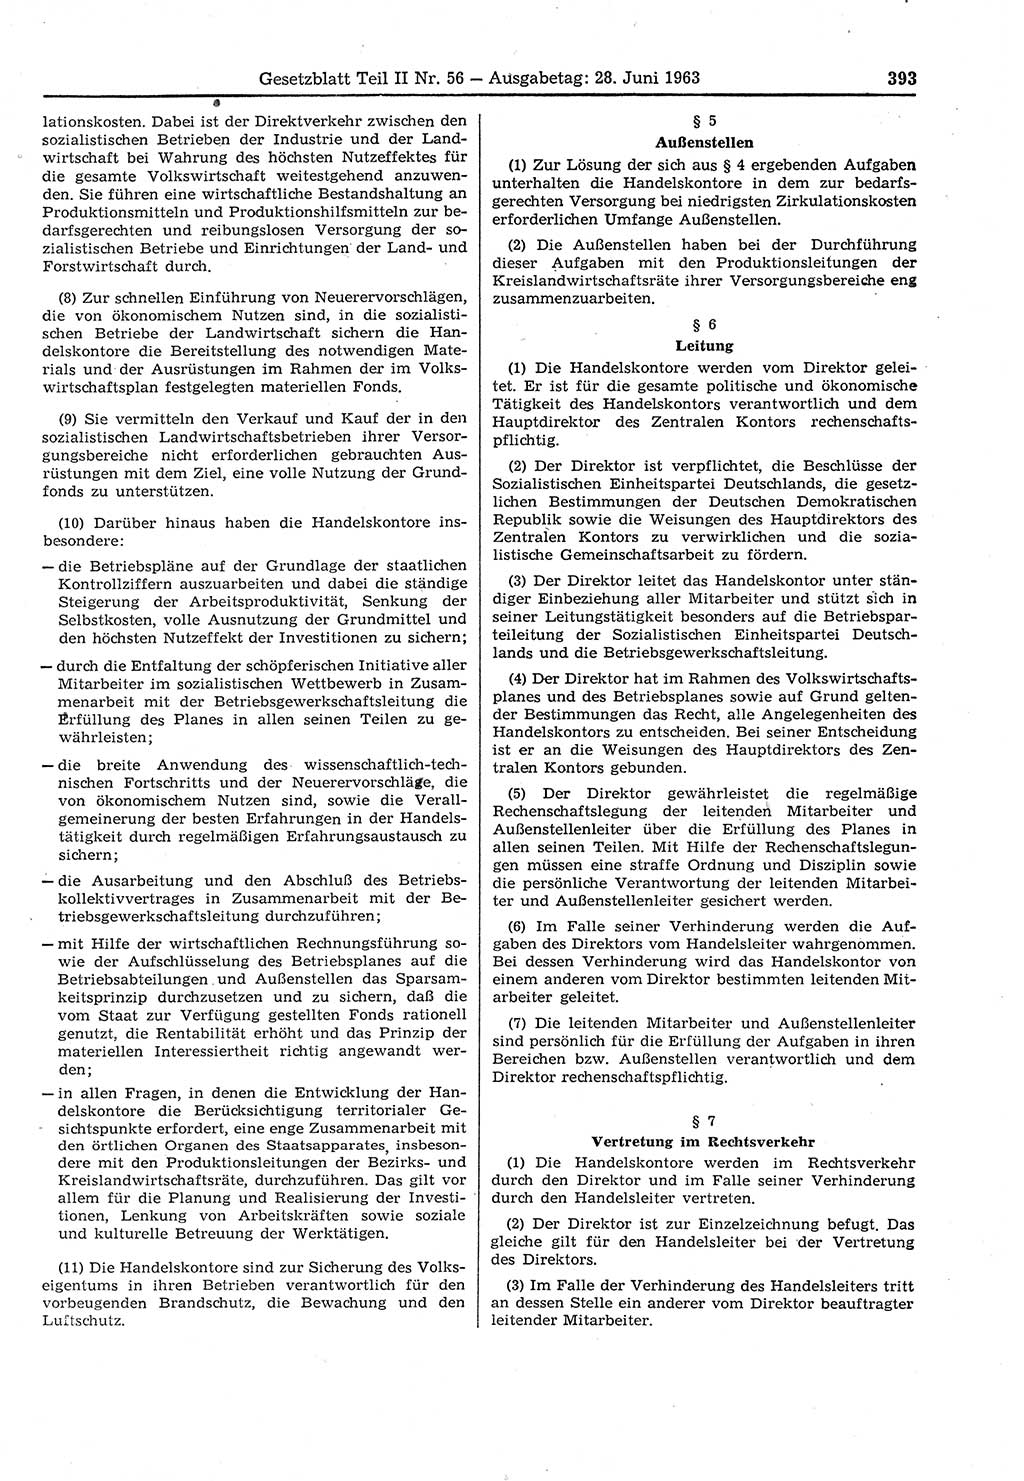 Gesetzblatt (GBl.) der Deutschen Demokratischen Republik (DDR) Teil ⅠⅠ 1963, Seite 393 (GBl. DDR ⅠⅠ 1963, S. 393)